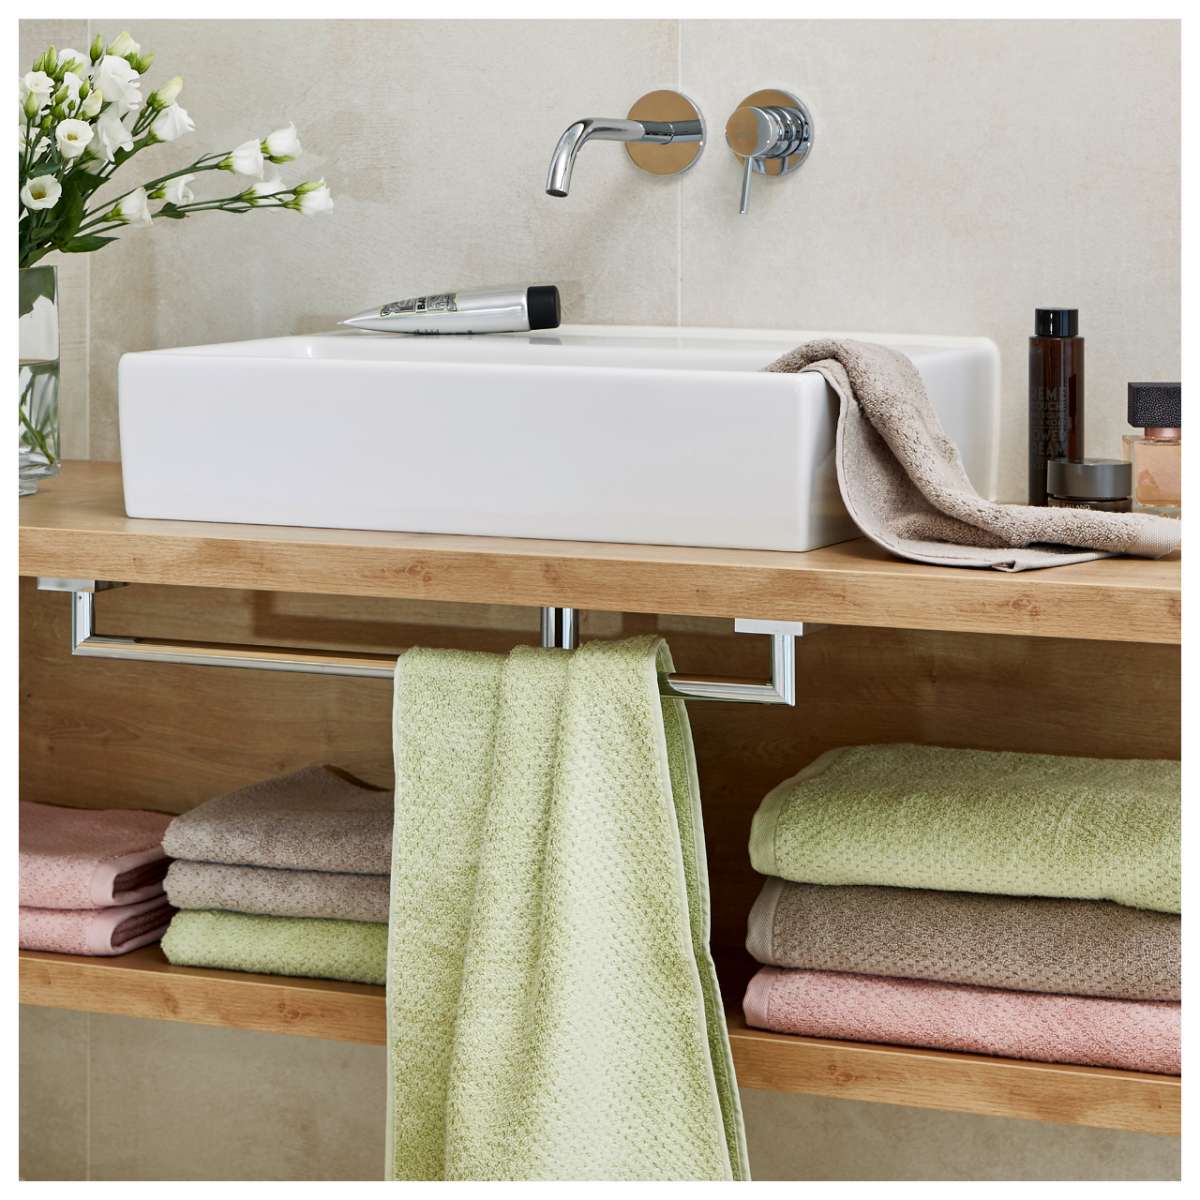 las hermosas toallas dobladas de bambú rosa, turquesa y violeta cerca del  lavabo del baño 13455570 Foto de stock en Vecteezy